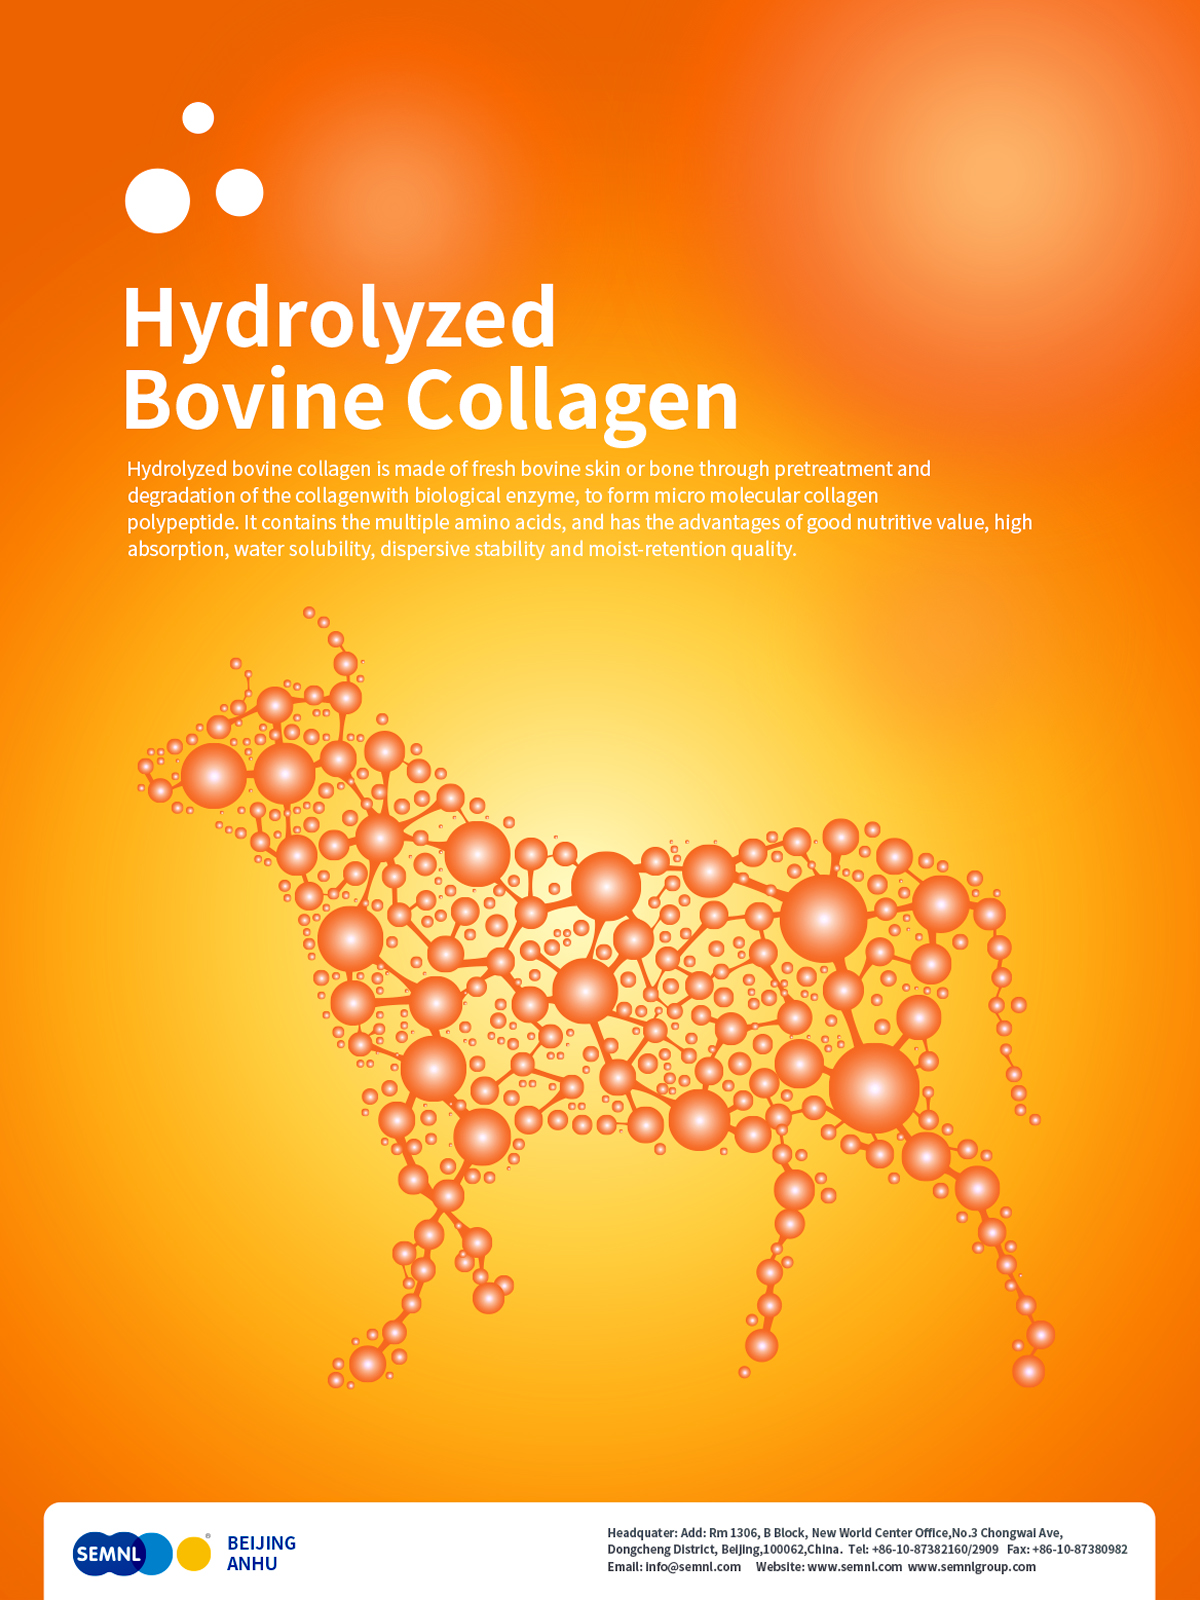 SEMNL Hydrolyzed Bovine Collagen